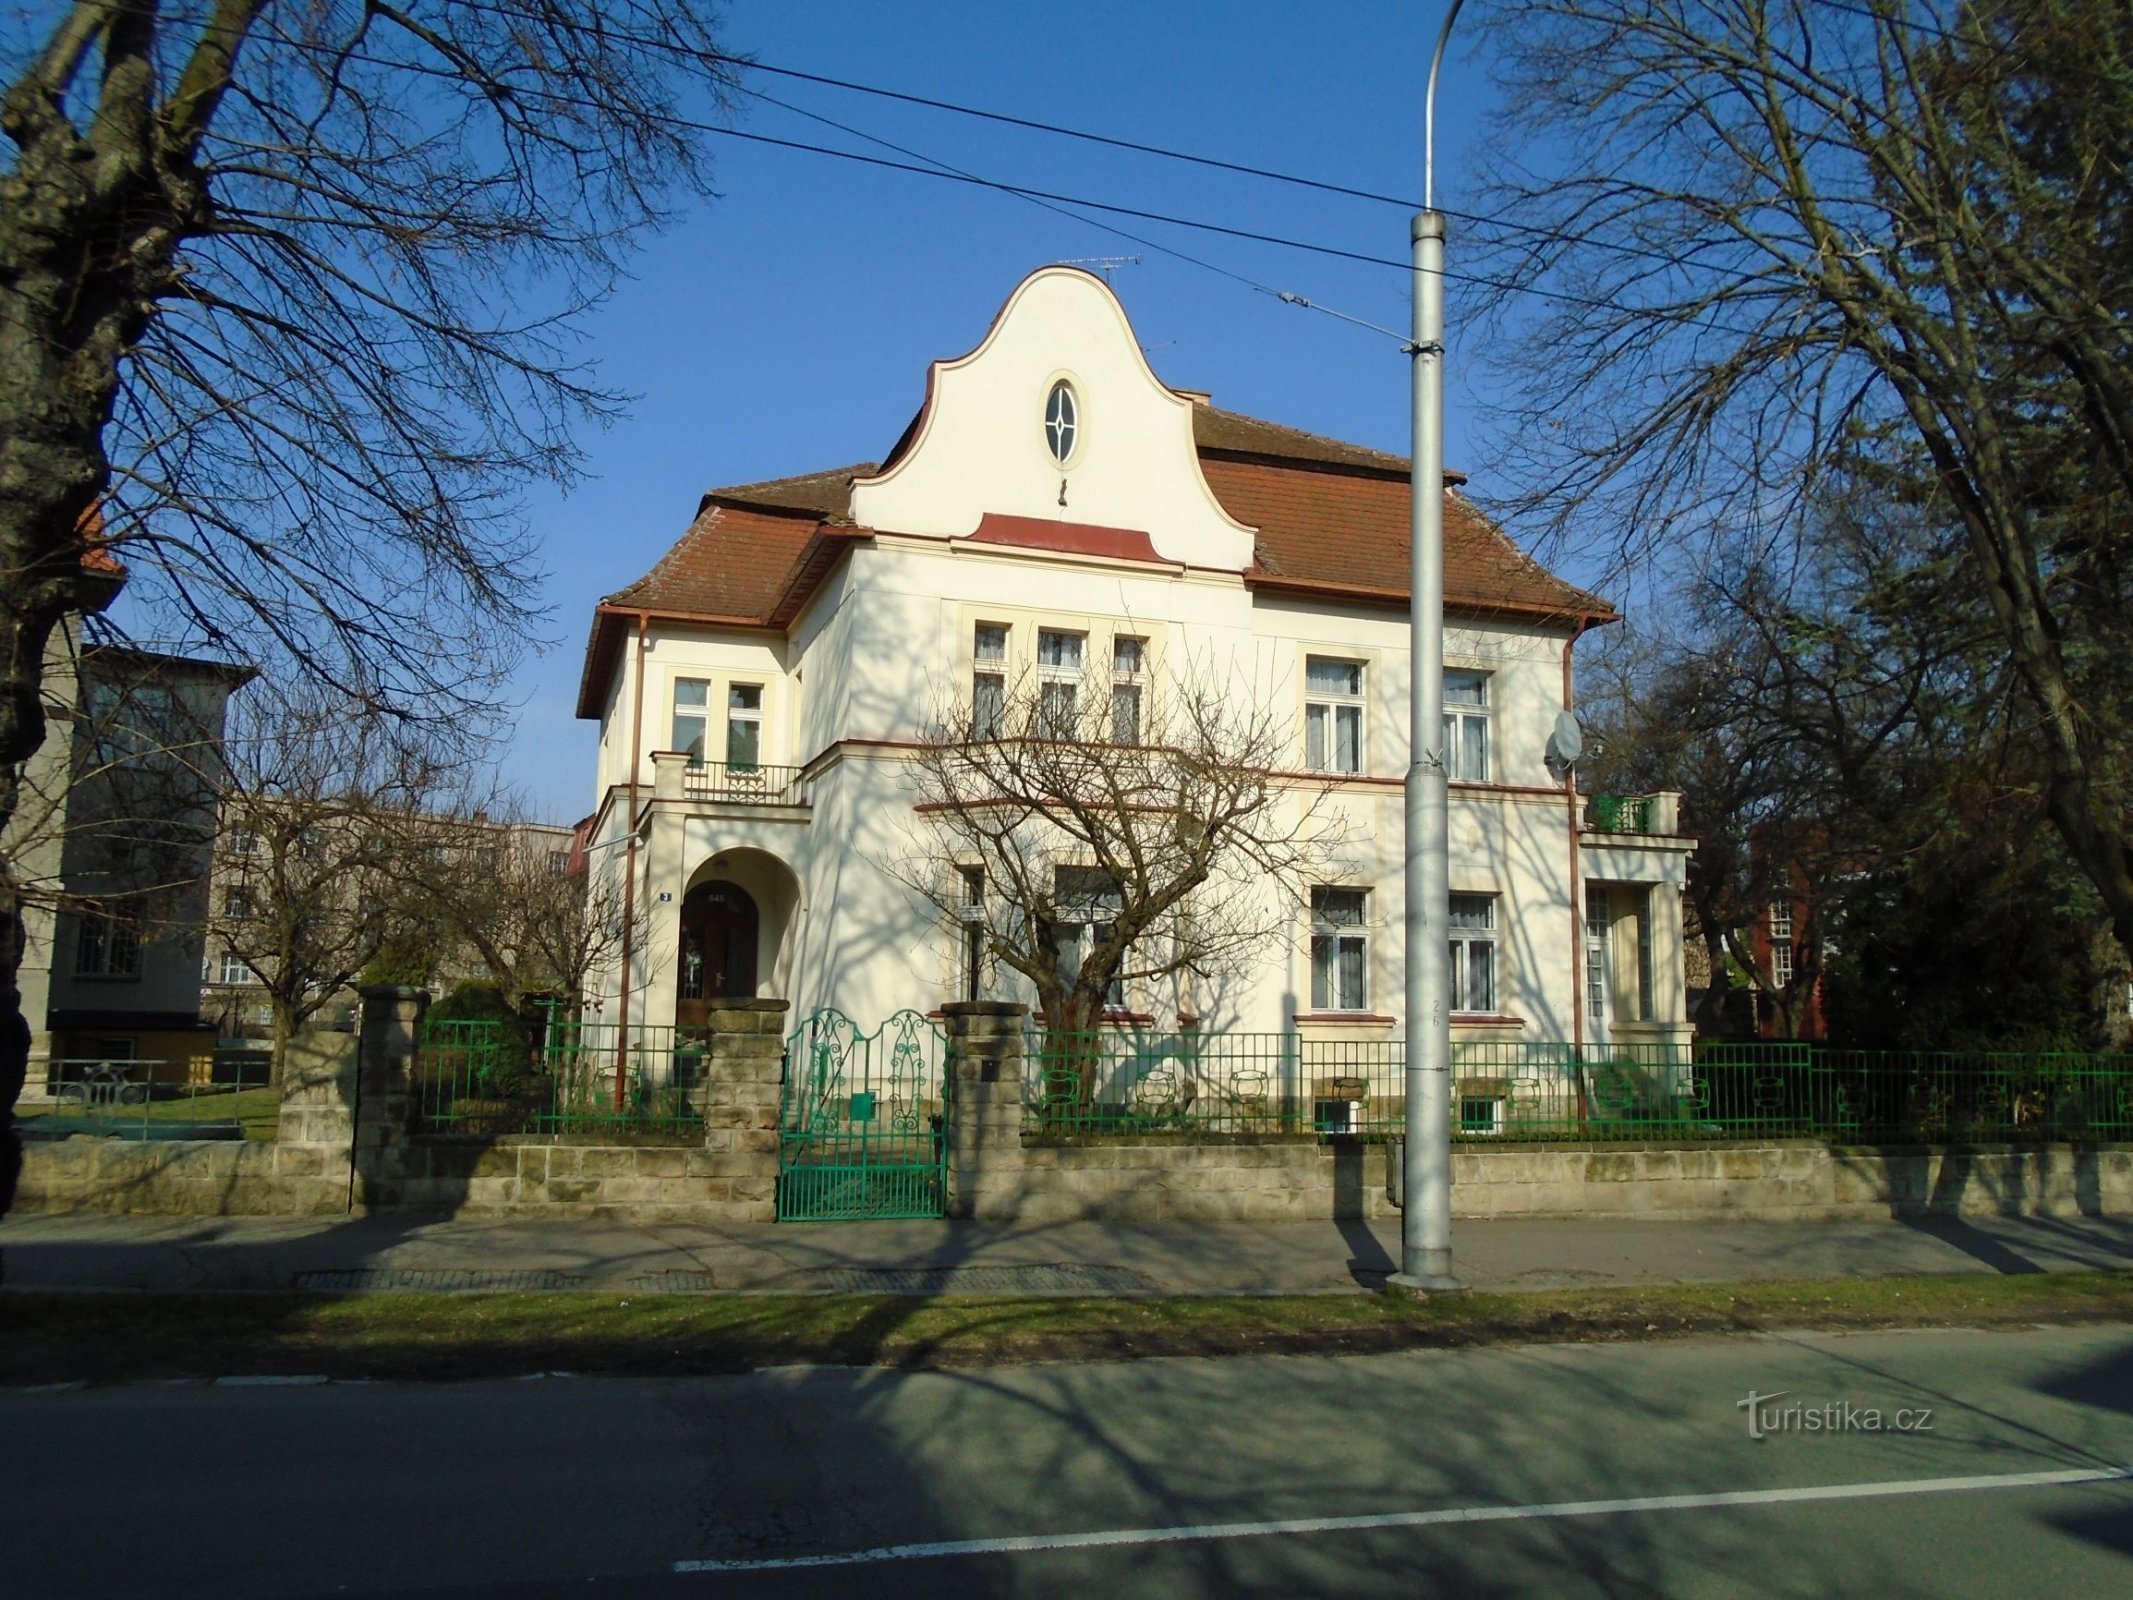 Grad št. 545 (Hradec Králové, 1.4.2018. april XNUMX)